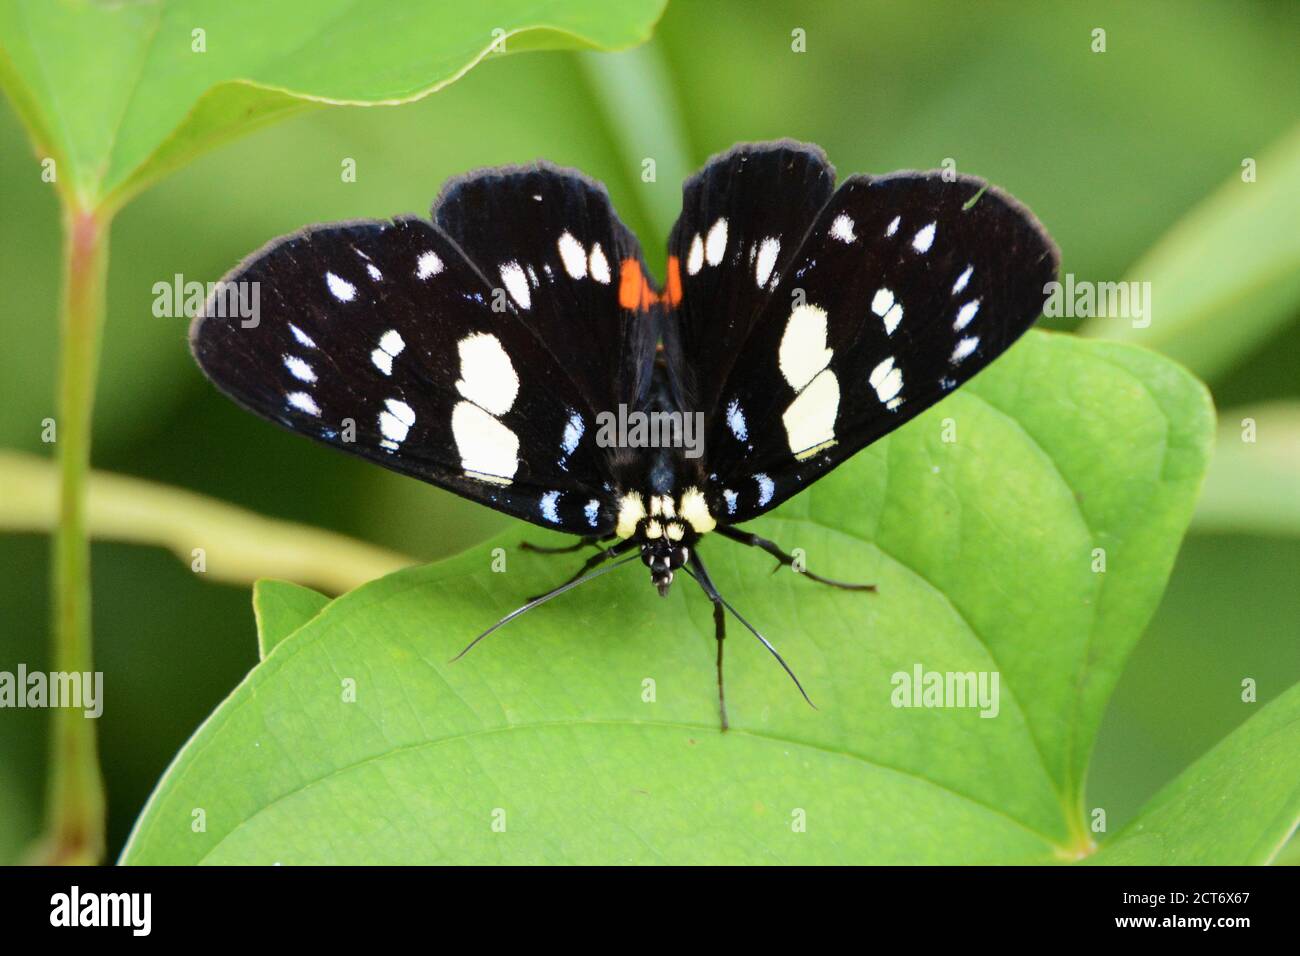 Magnifique papillon blanc à pois noir Banque D'Images